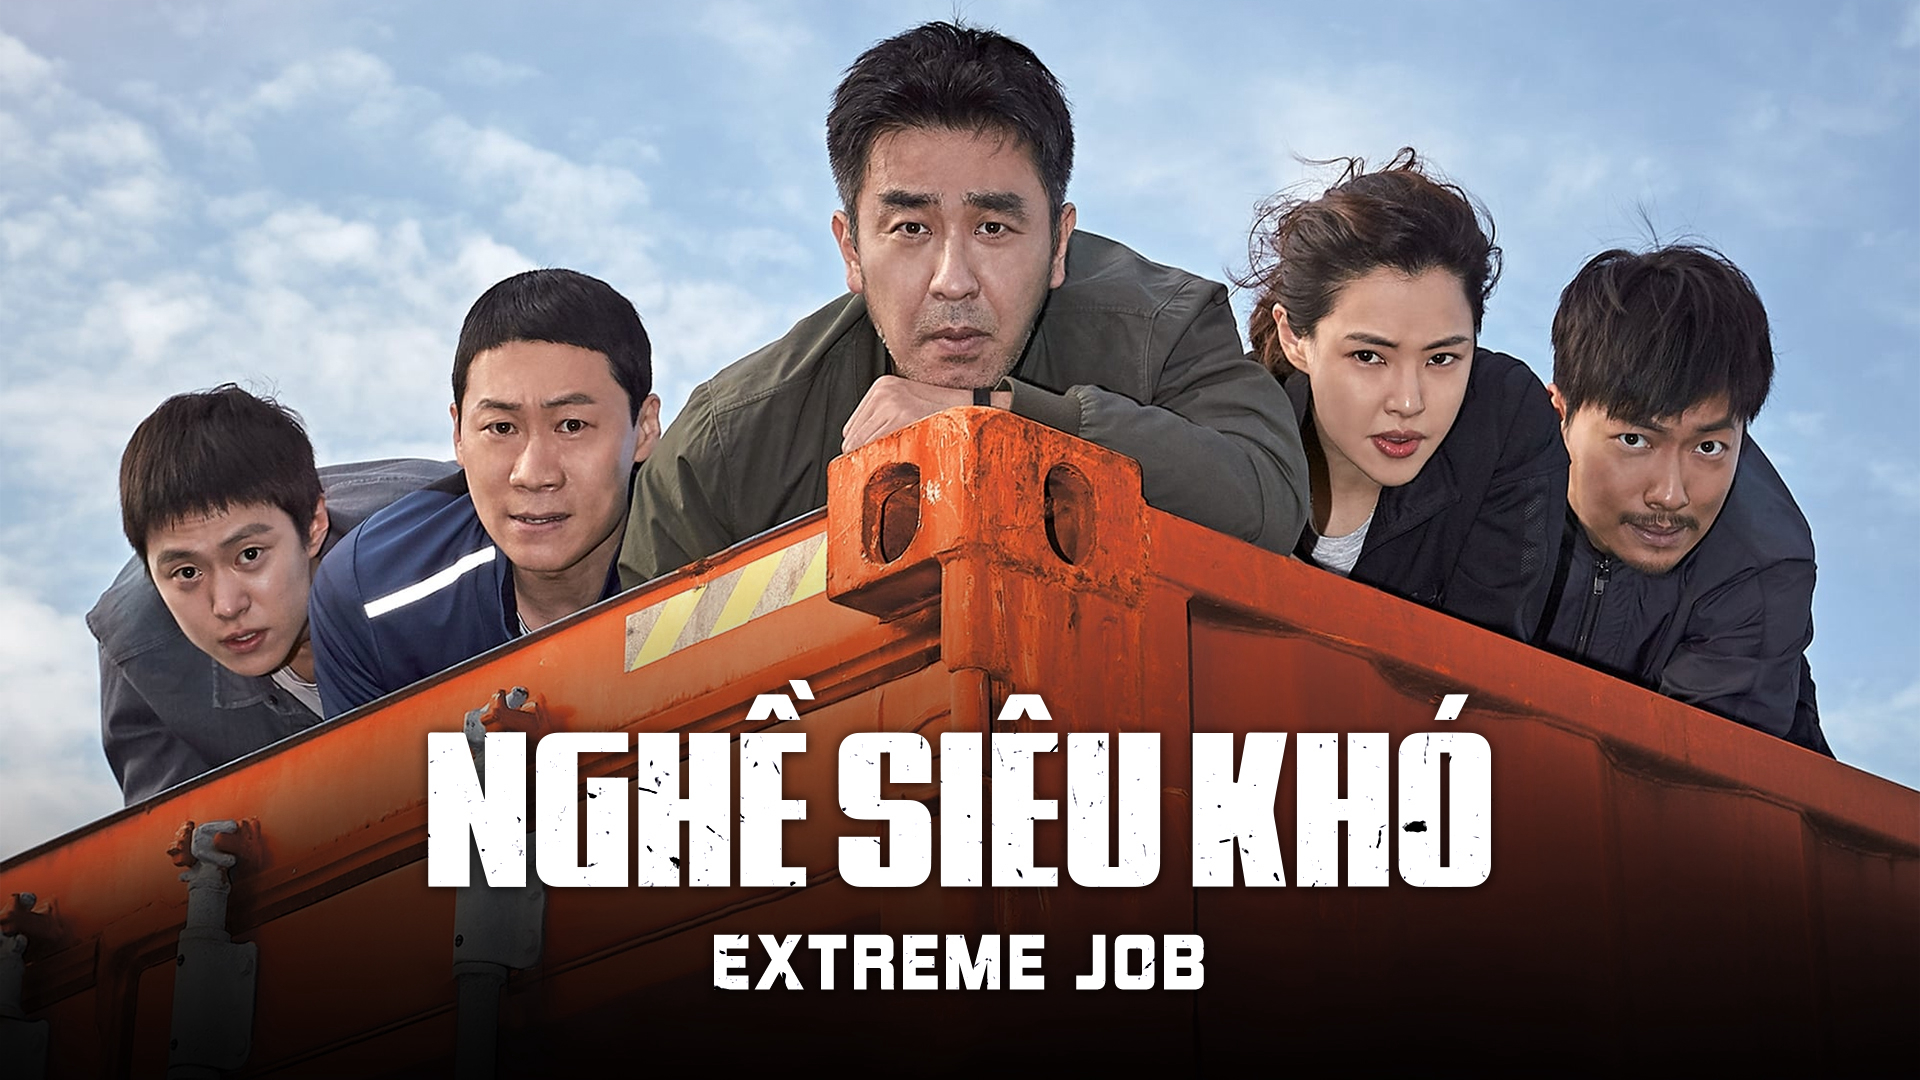 Nghề siêu khó - Extreme Job (2019)